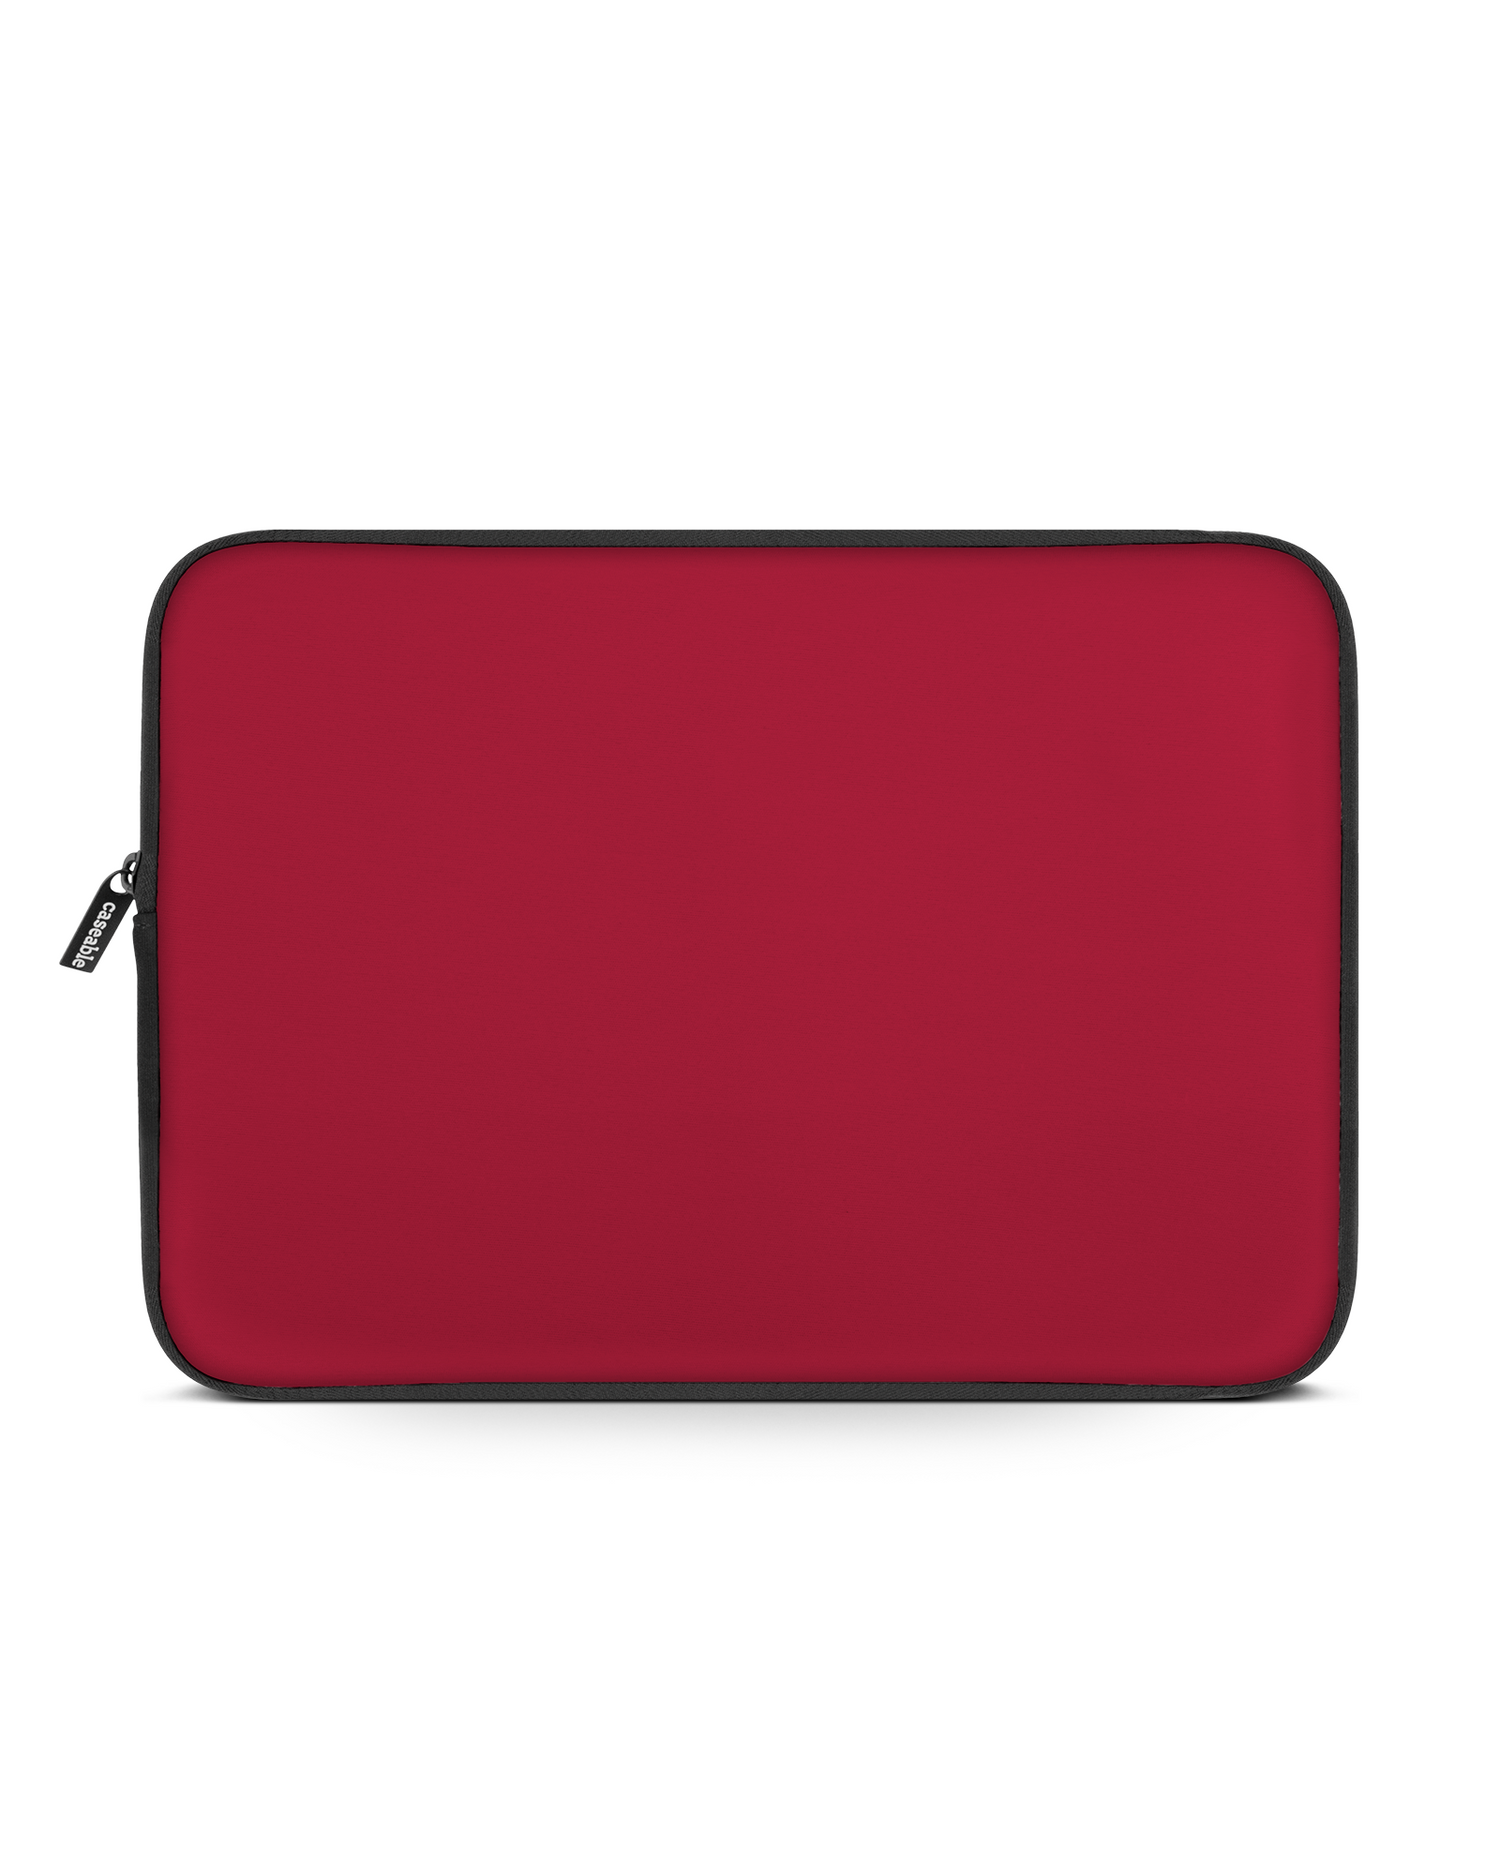 RED Laptophülle 16 Zoll: Vorderansicht